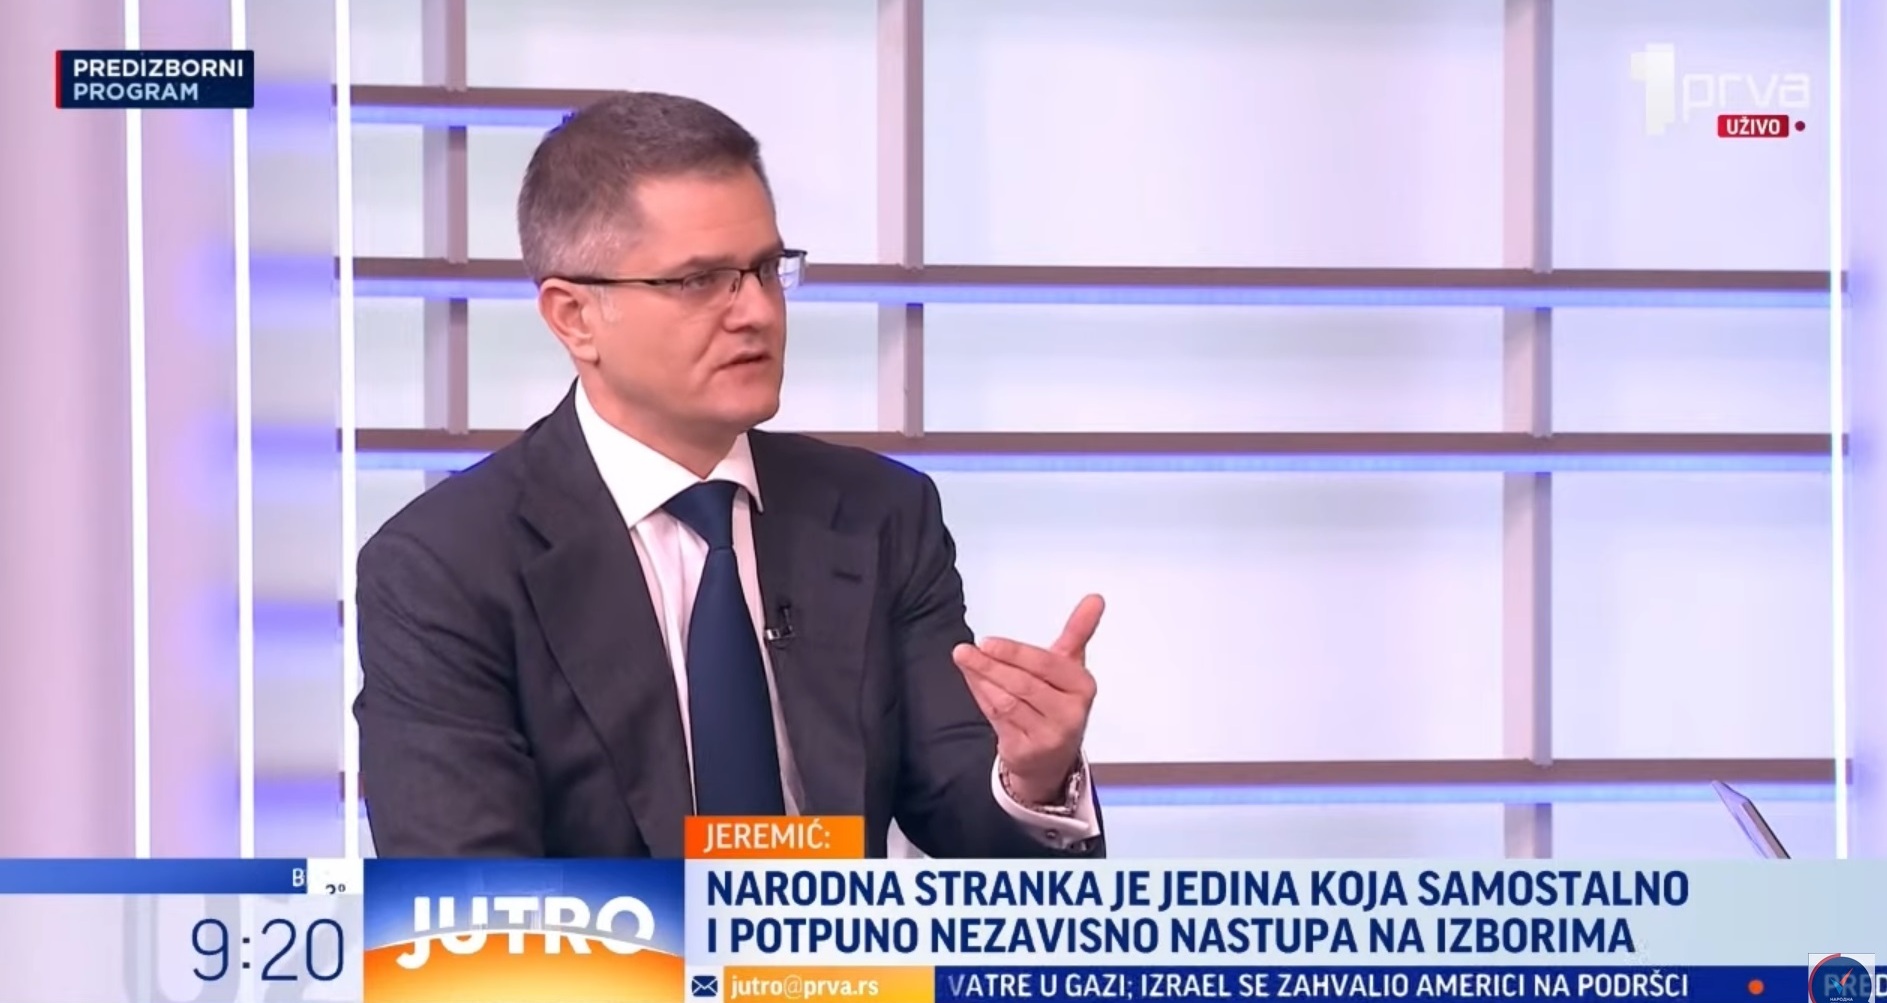 Јеремић: Једино је Народна странка независна од домаћих и страних центара медијске и политичке моћи